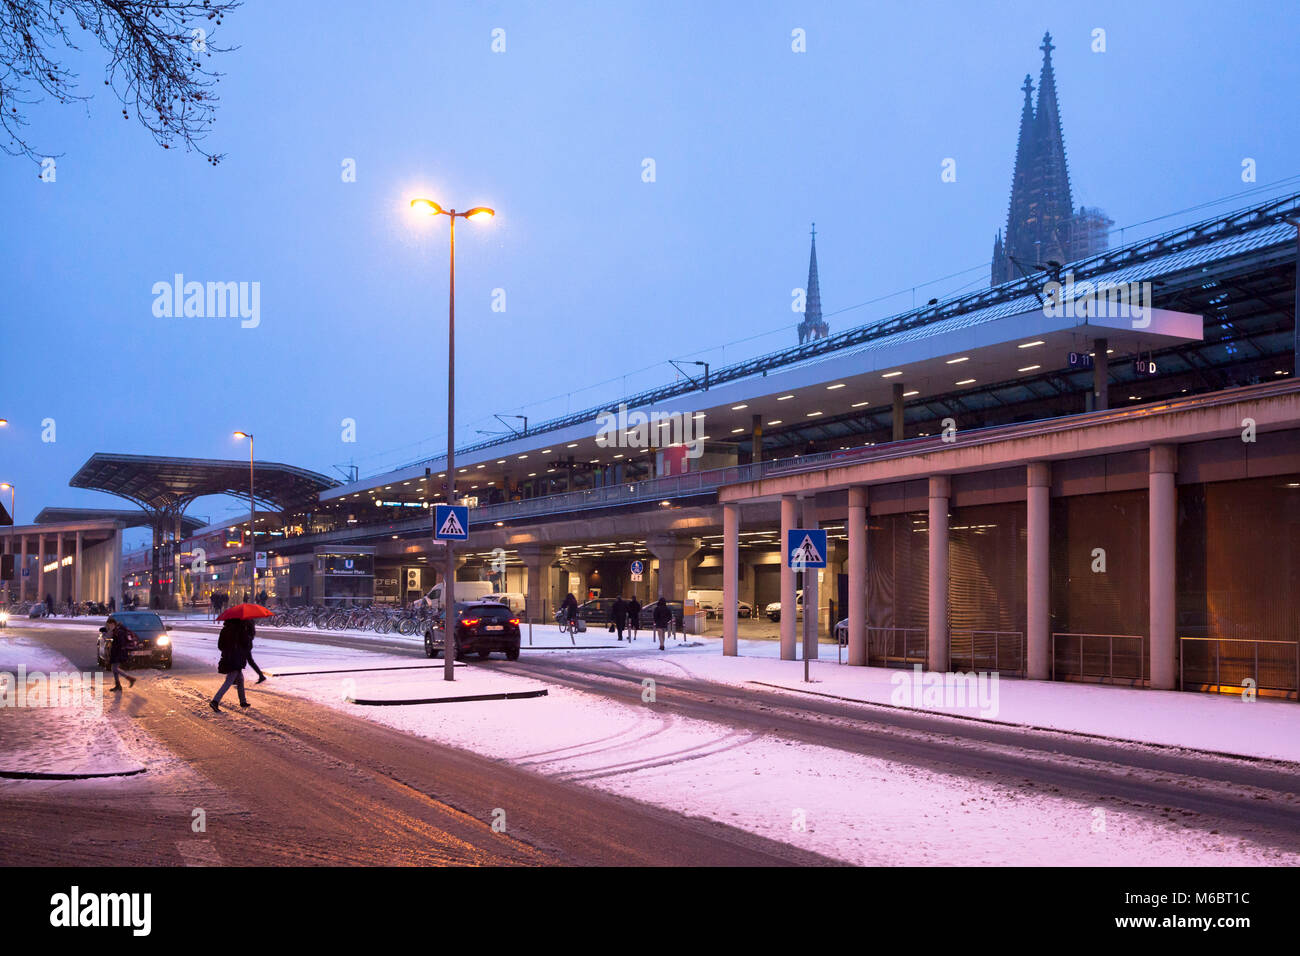 Germania, Colonia, del Breslauer square presso la stazione principale e sullo sfondo la cattedrale, neve in inverno. Deutschland, Koeln, der Breslauer Platz un Foto Stock